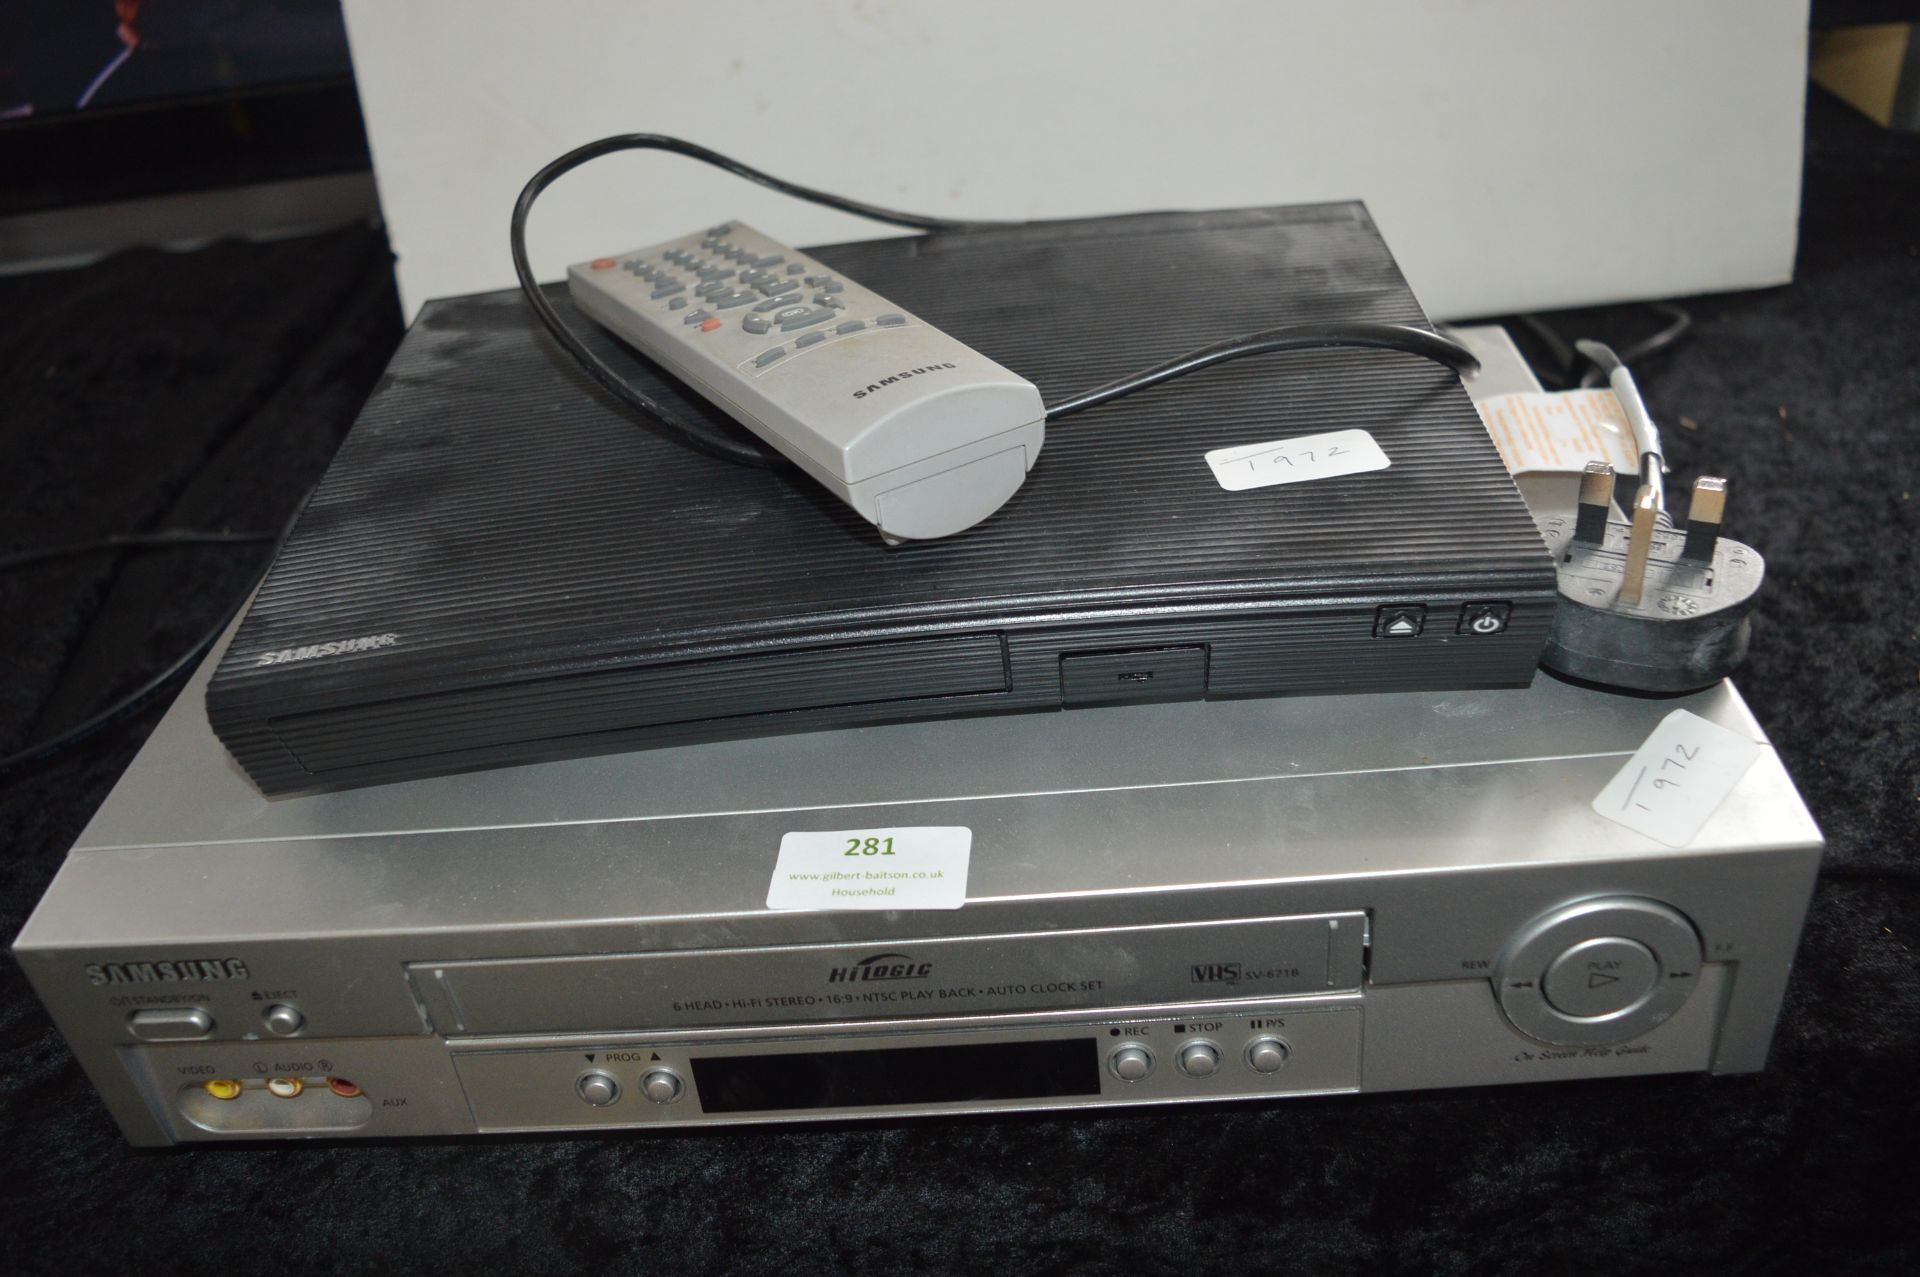 Samsung Bluray Player plus Samsung VHS